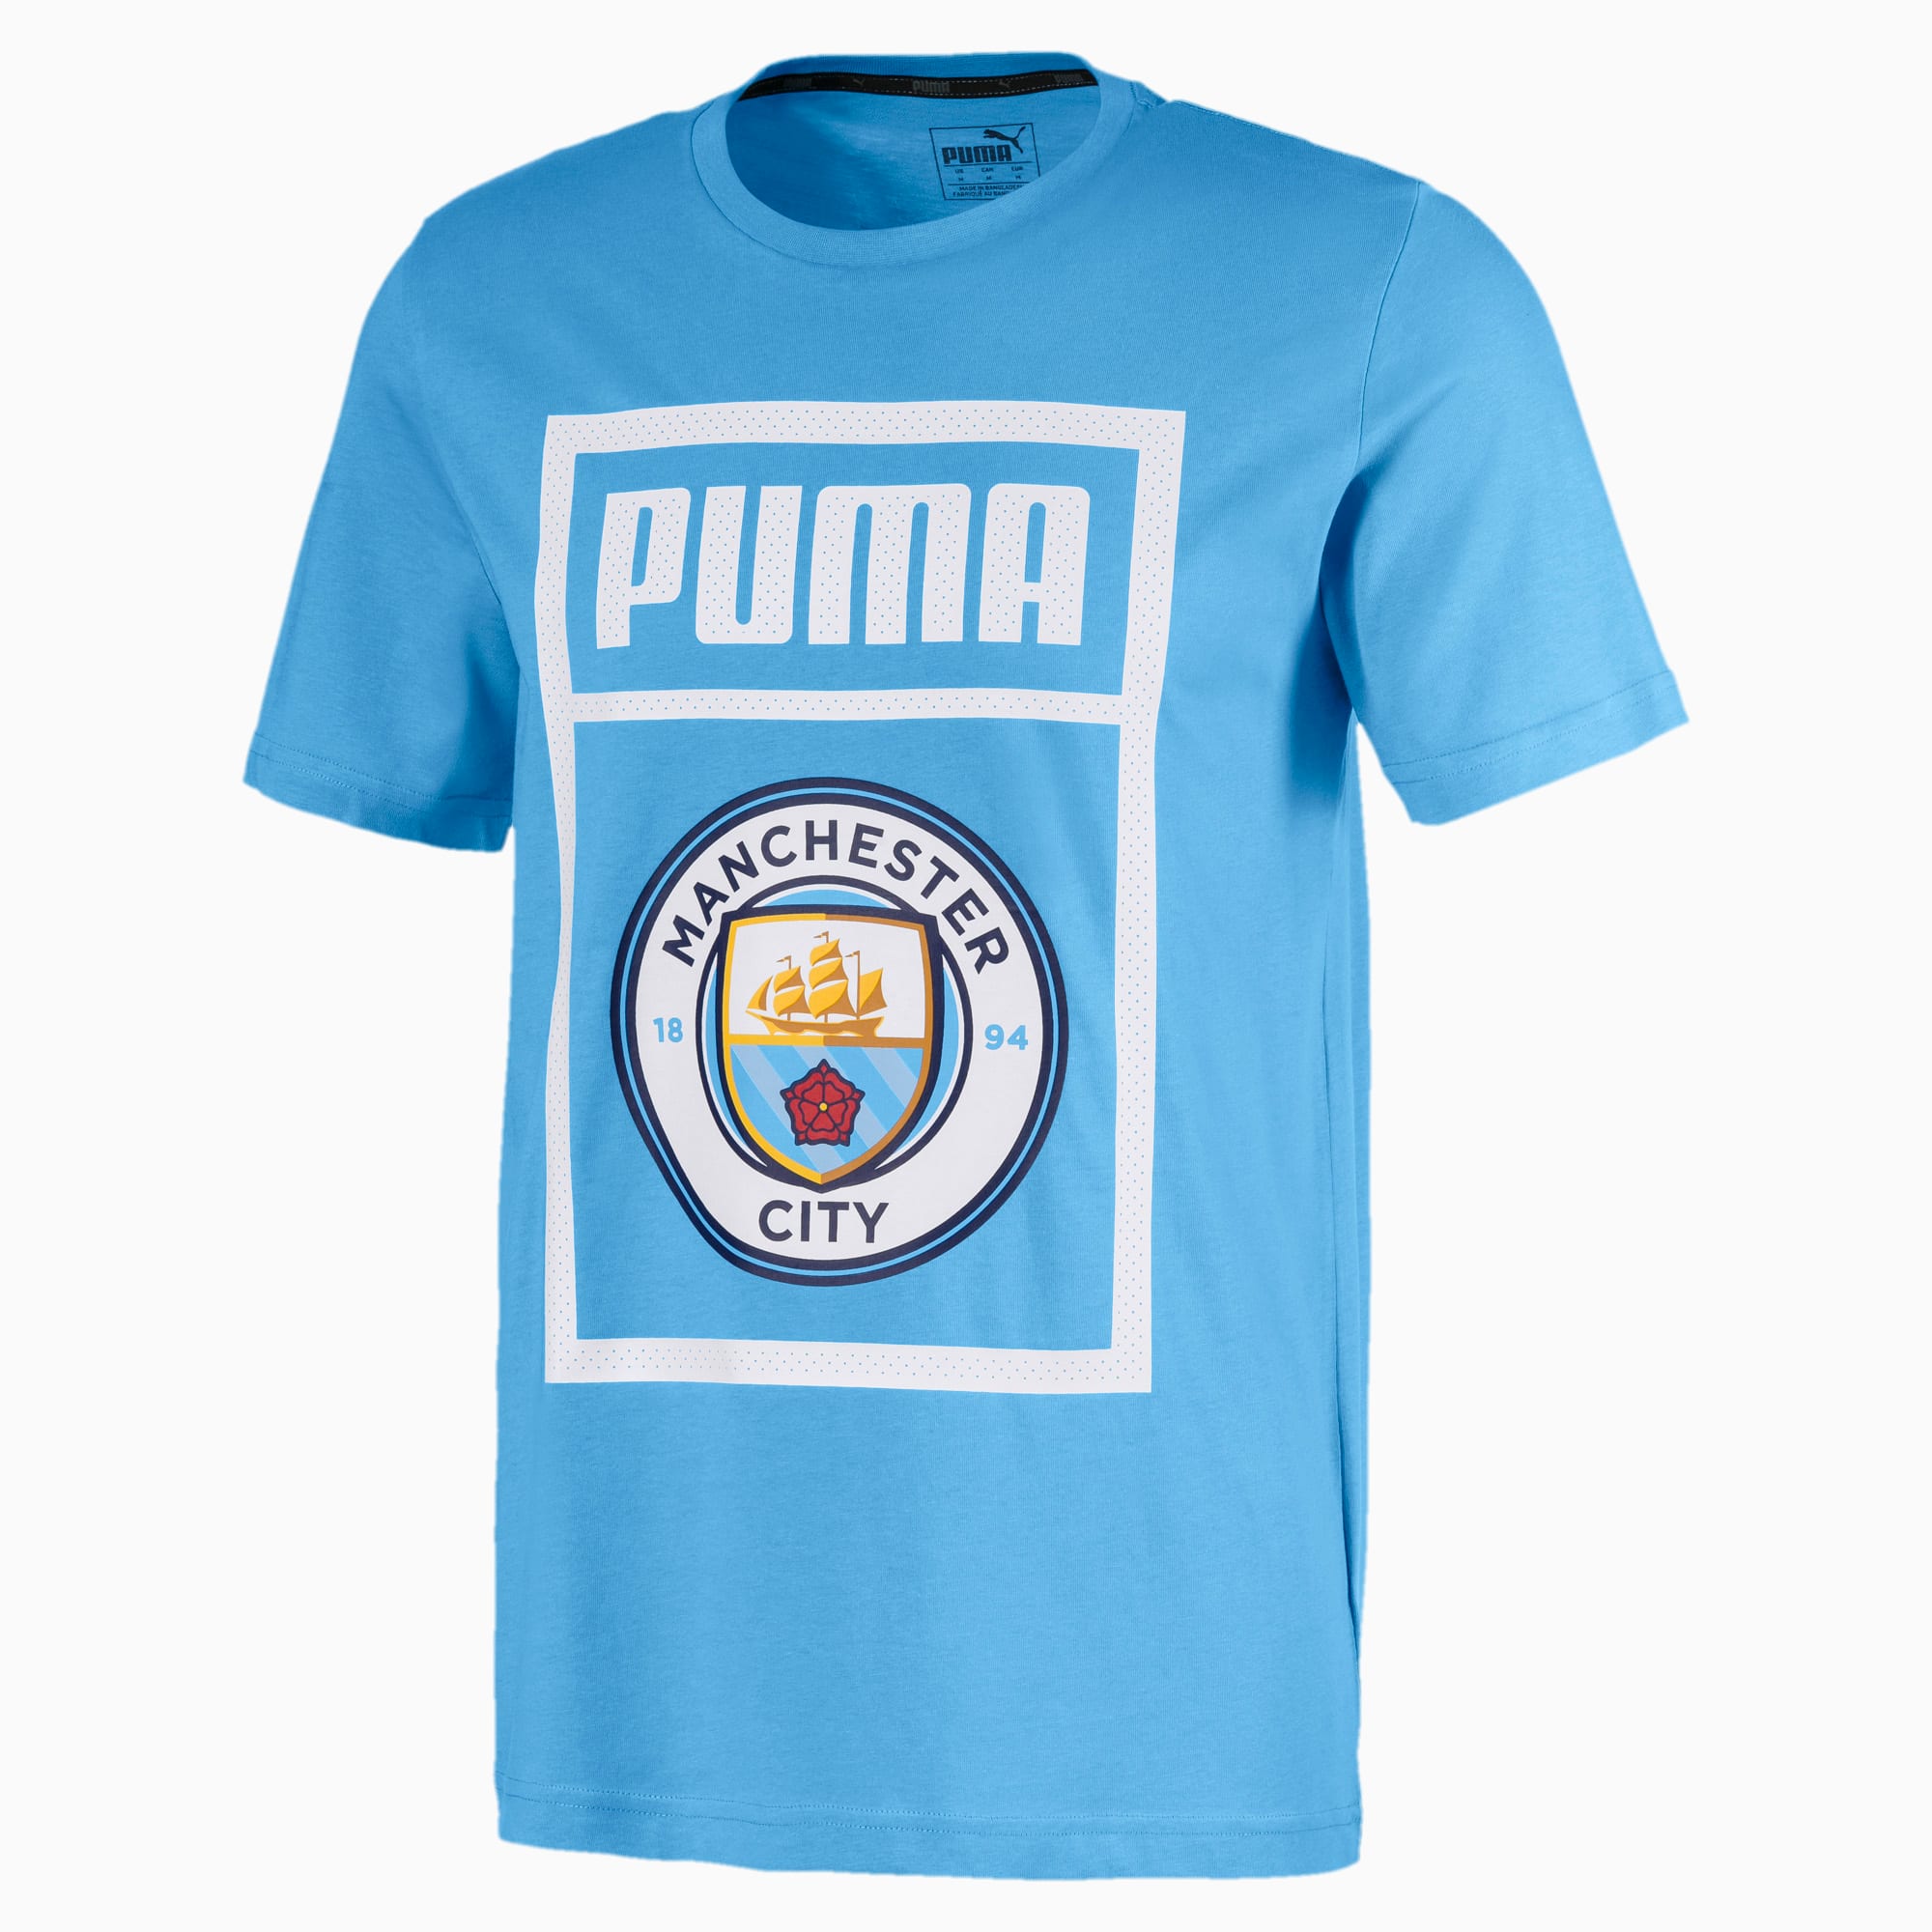 light blue puma shirt